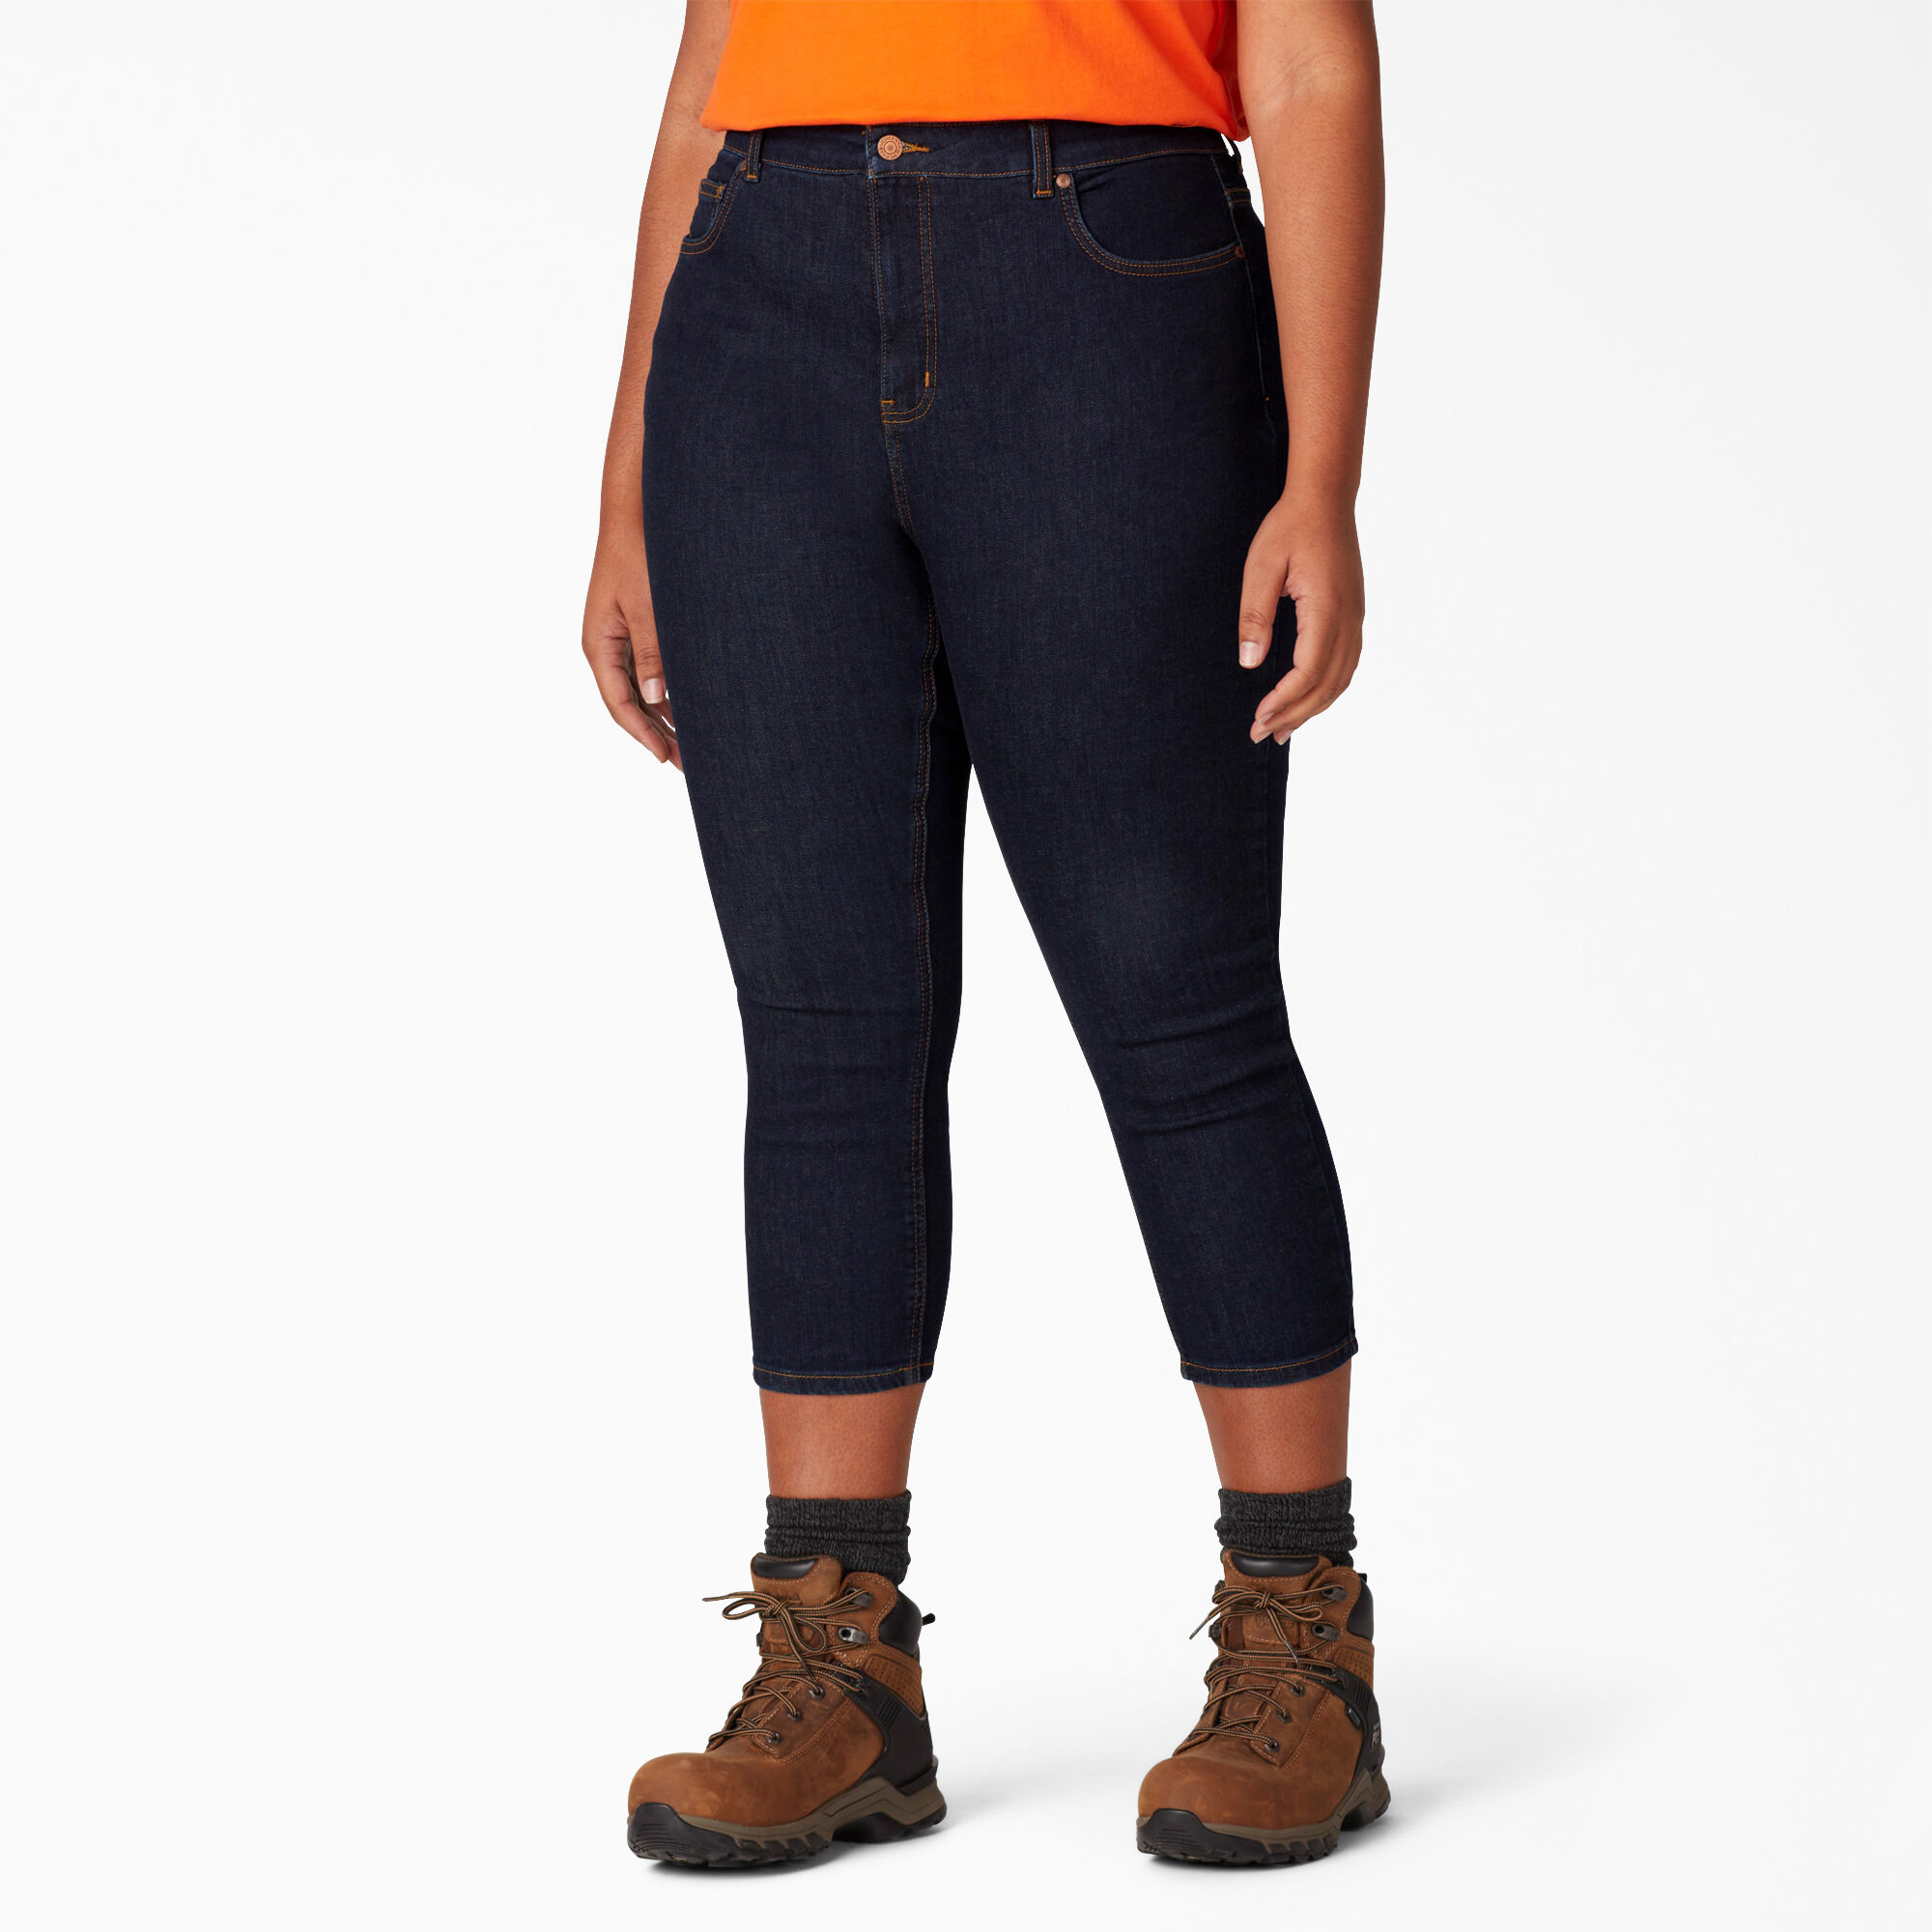 Dickies Jeans Womens Boot Cut Blue Denim Work Pants FD113 Classic fit w/ pockets 